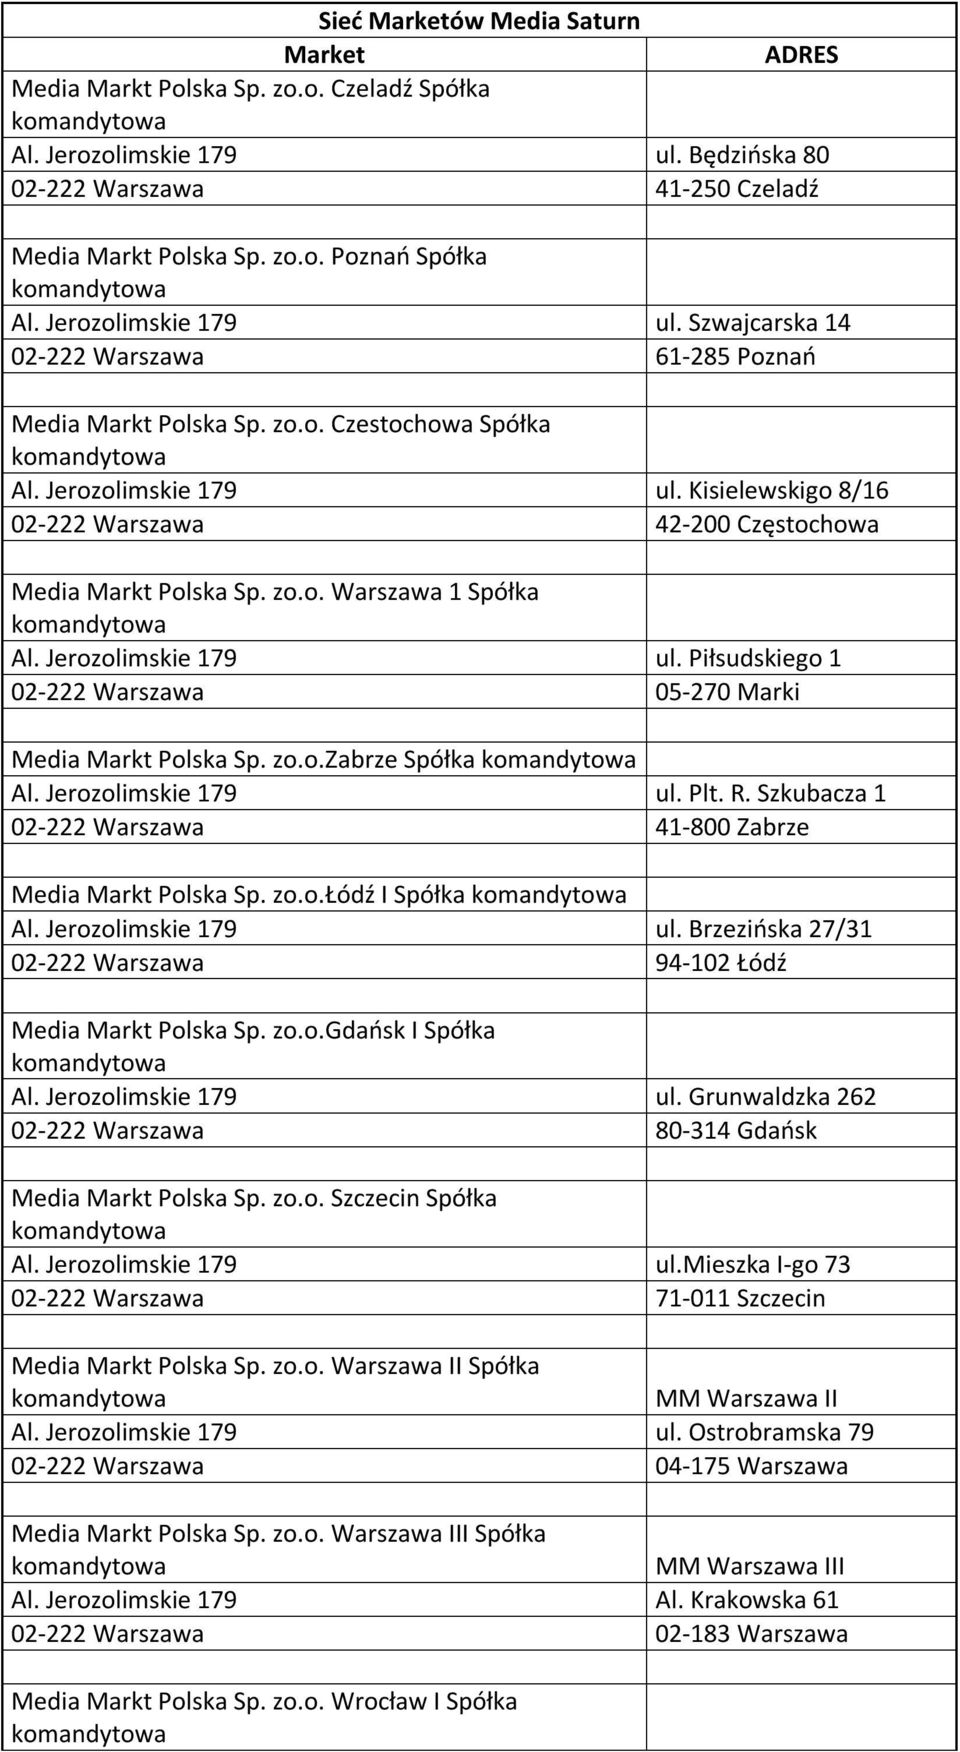 Piłsudskiego 1 05-270 Marki Media Markt Polska Sp. zo.o.zabrze Spółka ul. Plt. R. Szkubacza 1 41-800 Zabrze Media Markt Polska Sp. zo.o.łódź I Spółka ul.